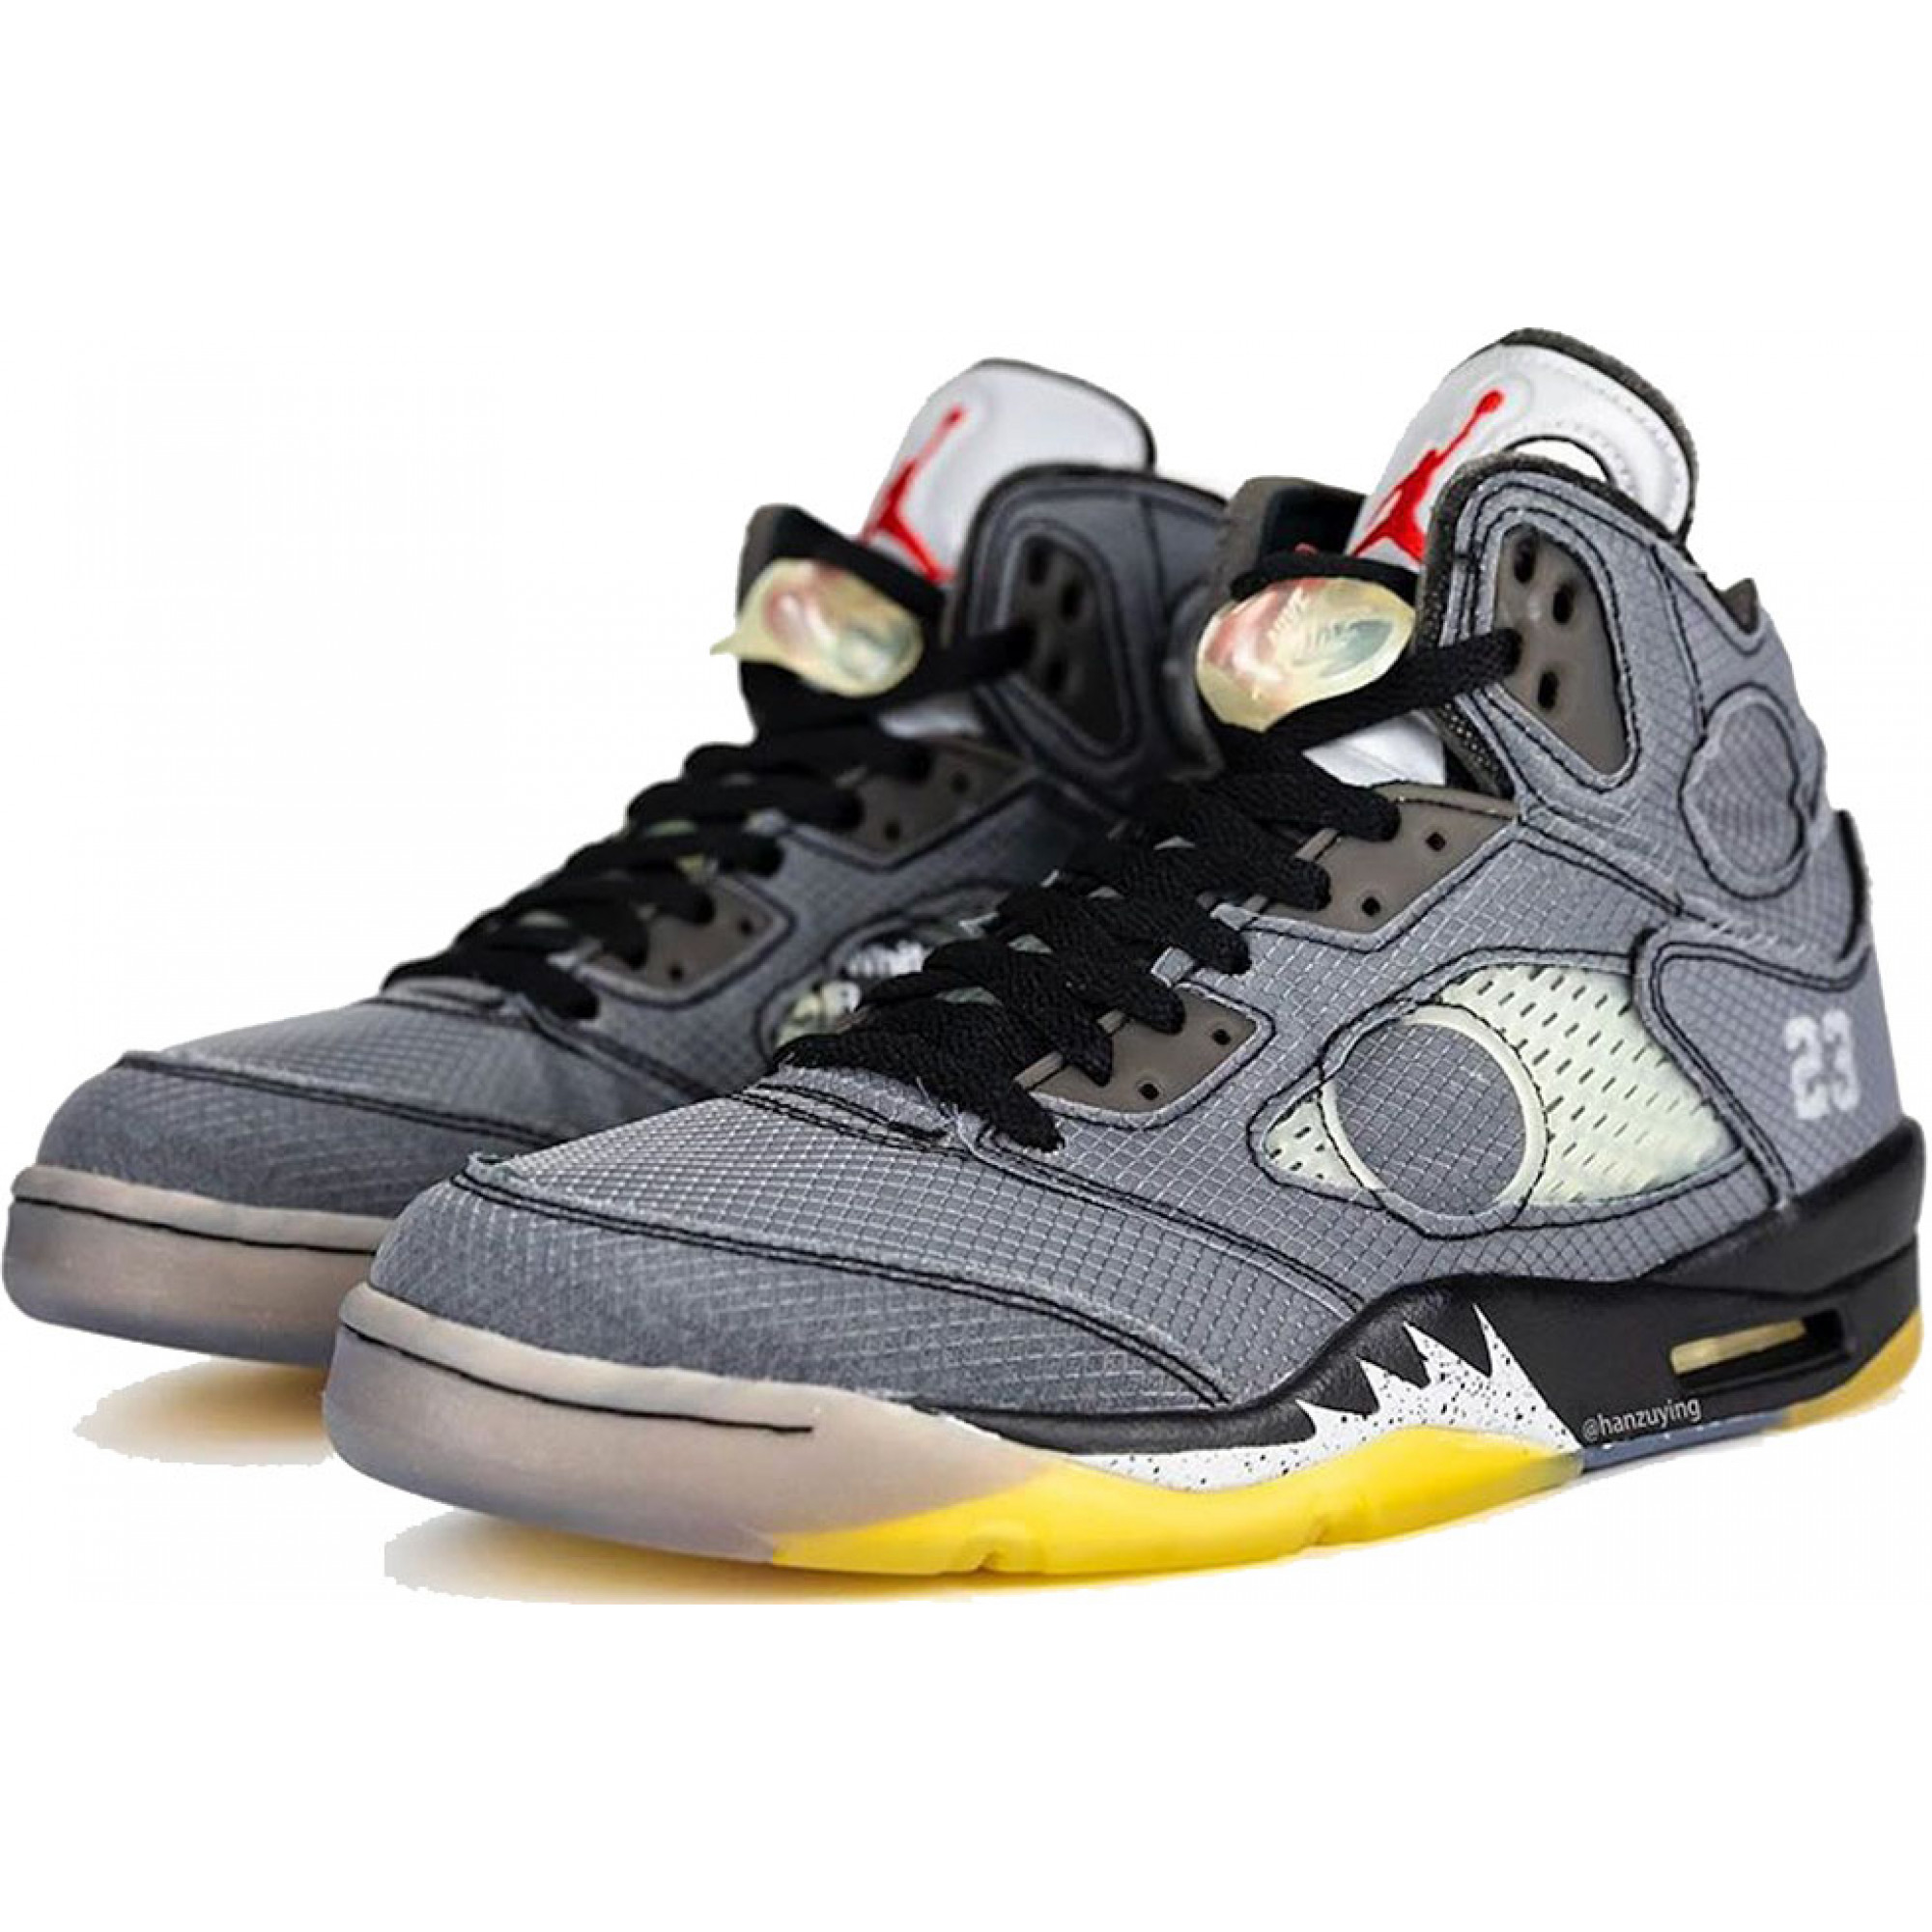 Купить кроссовки Nike Air Jordan 5 Retro SP серые: цена, отзывы, описание